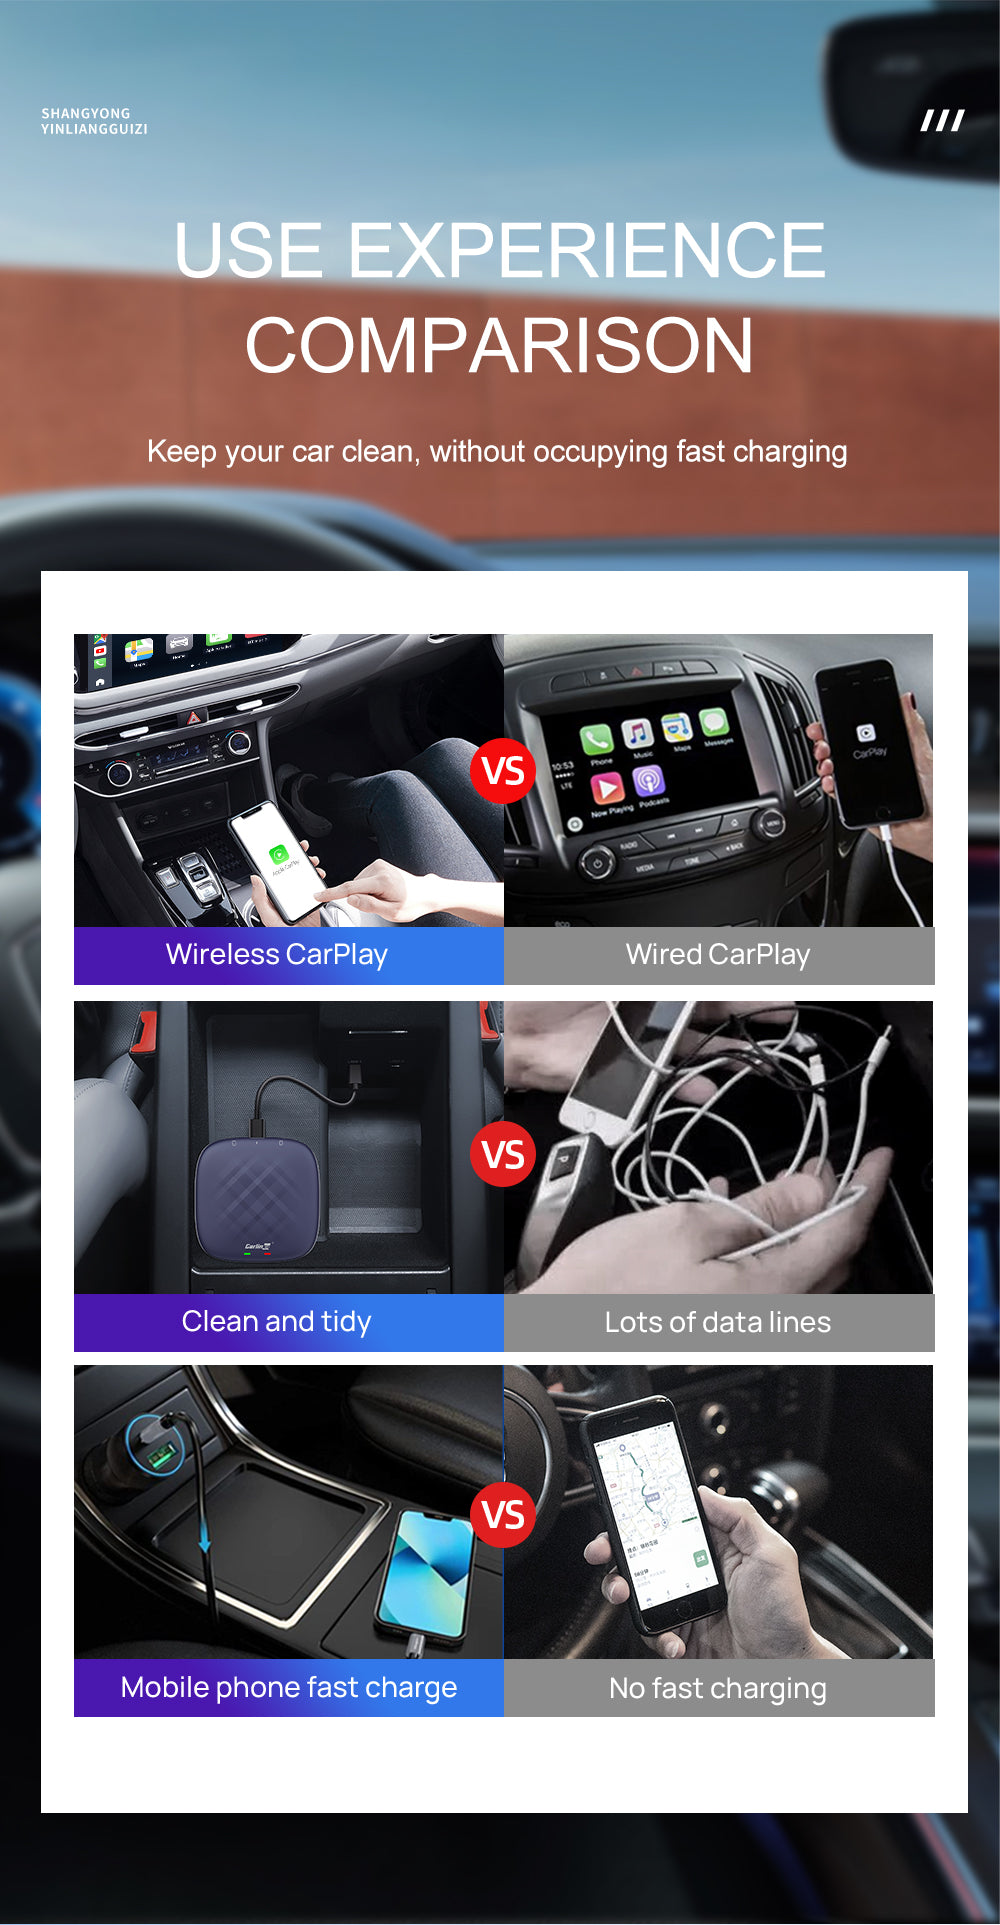 CarlinKit QCM 6125 Android 12 Wireless Carplay Al Box Android Auto HD –  Carlinkit Wireless CarPlay Official Store